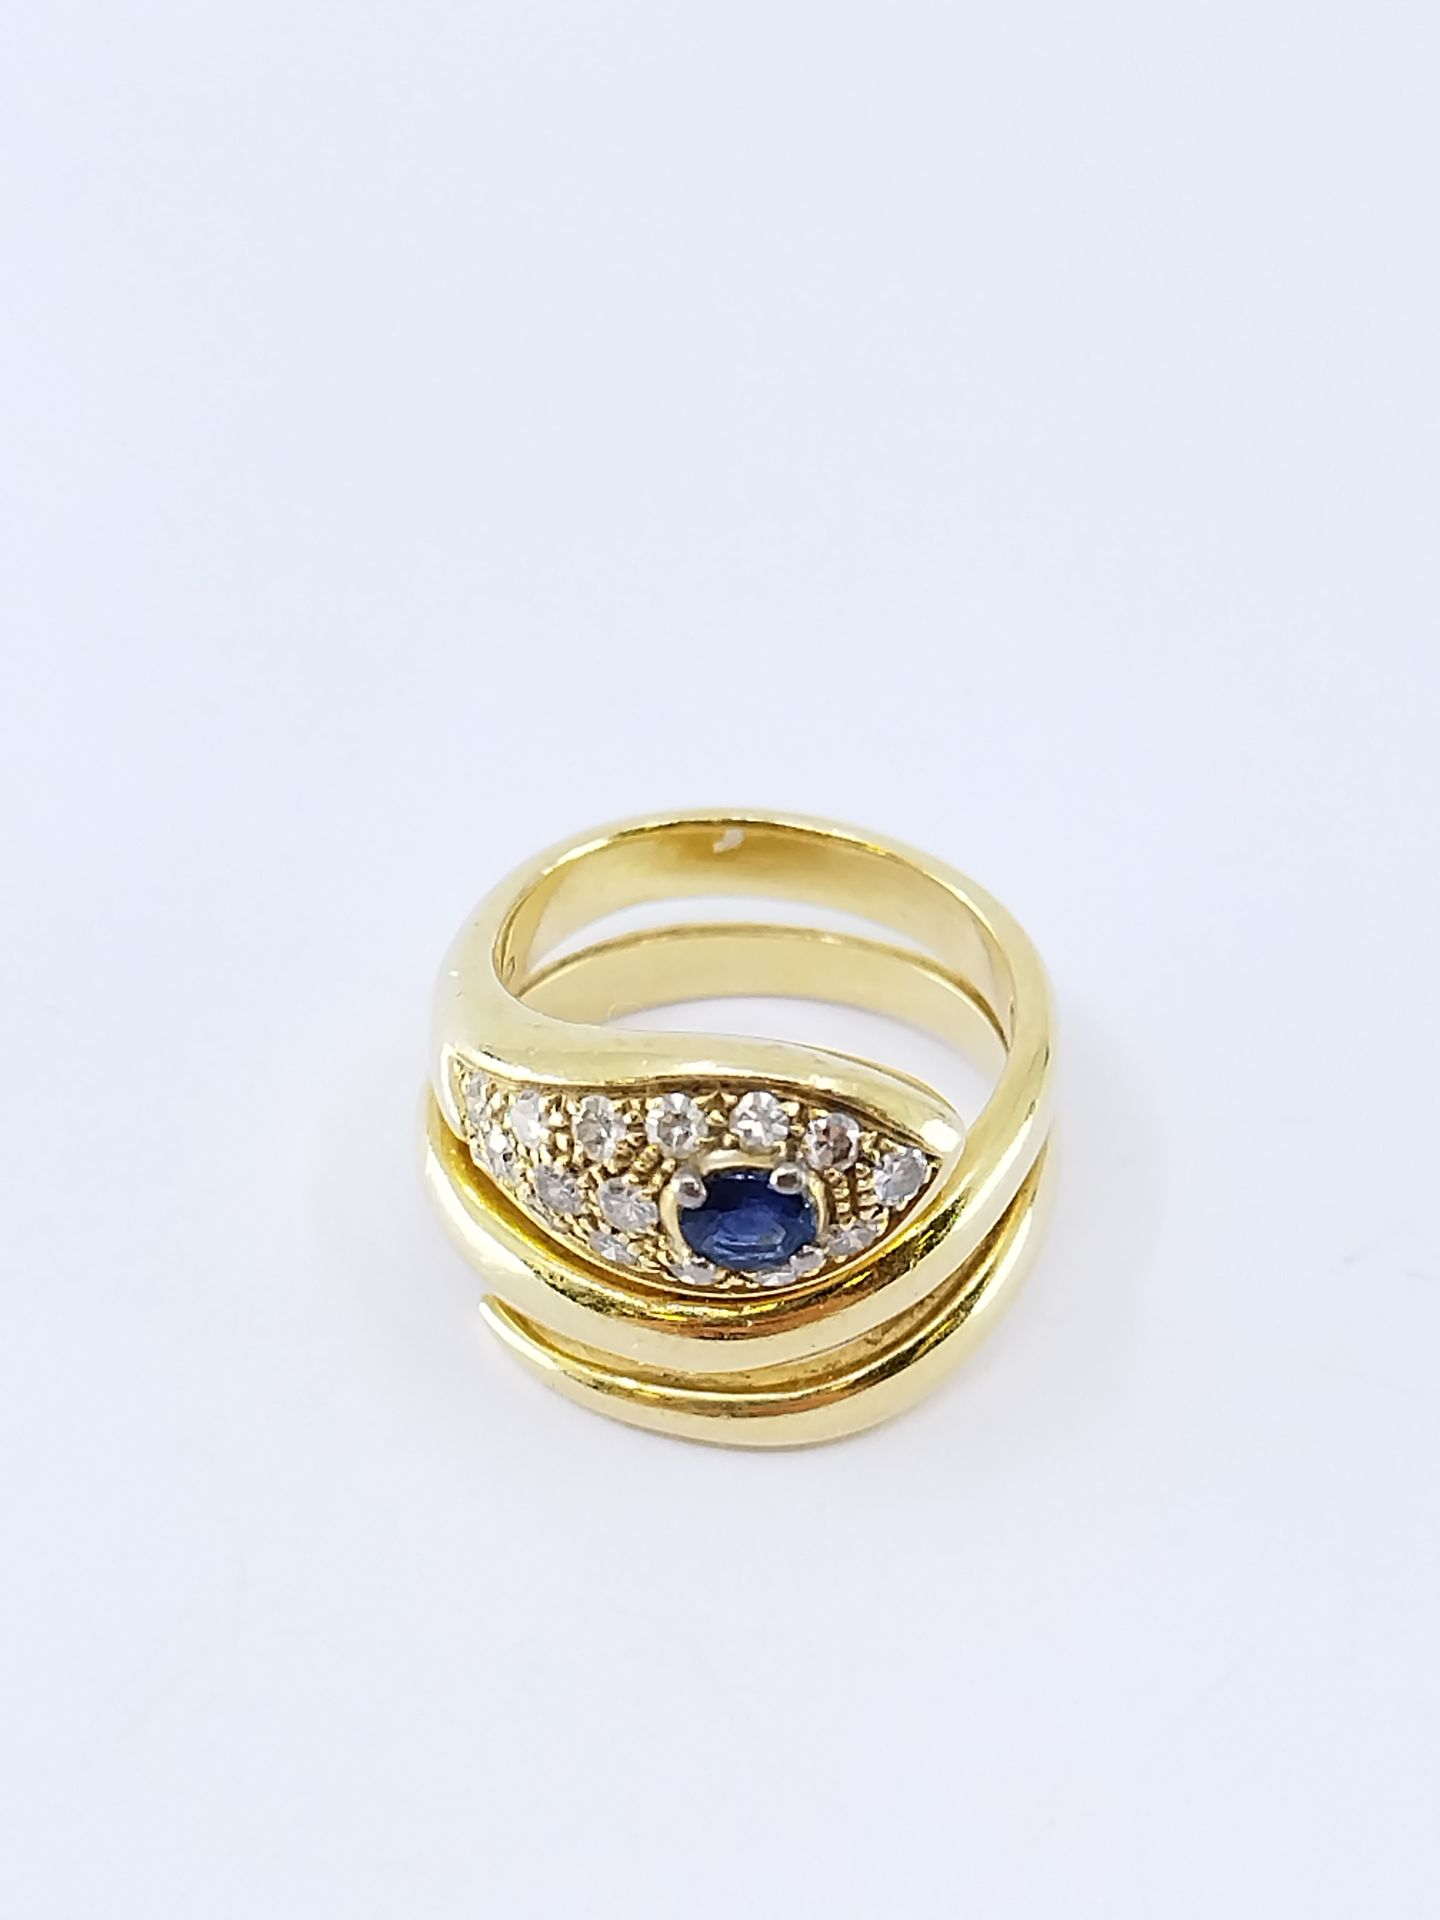 Null 750°黄金蛇形戒指，镶嵌16颗钻石和蓝宝石

毛重 : 11,82 g

TDD 52